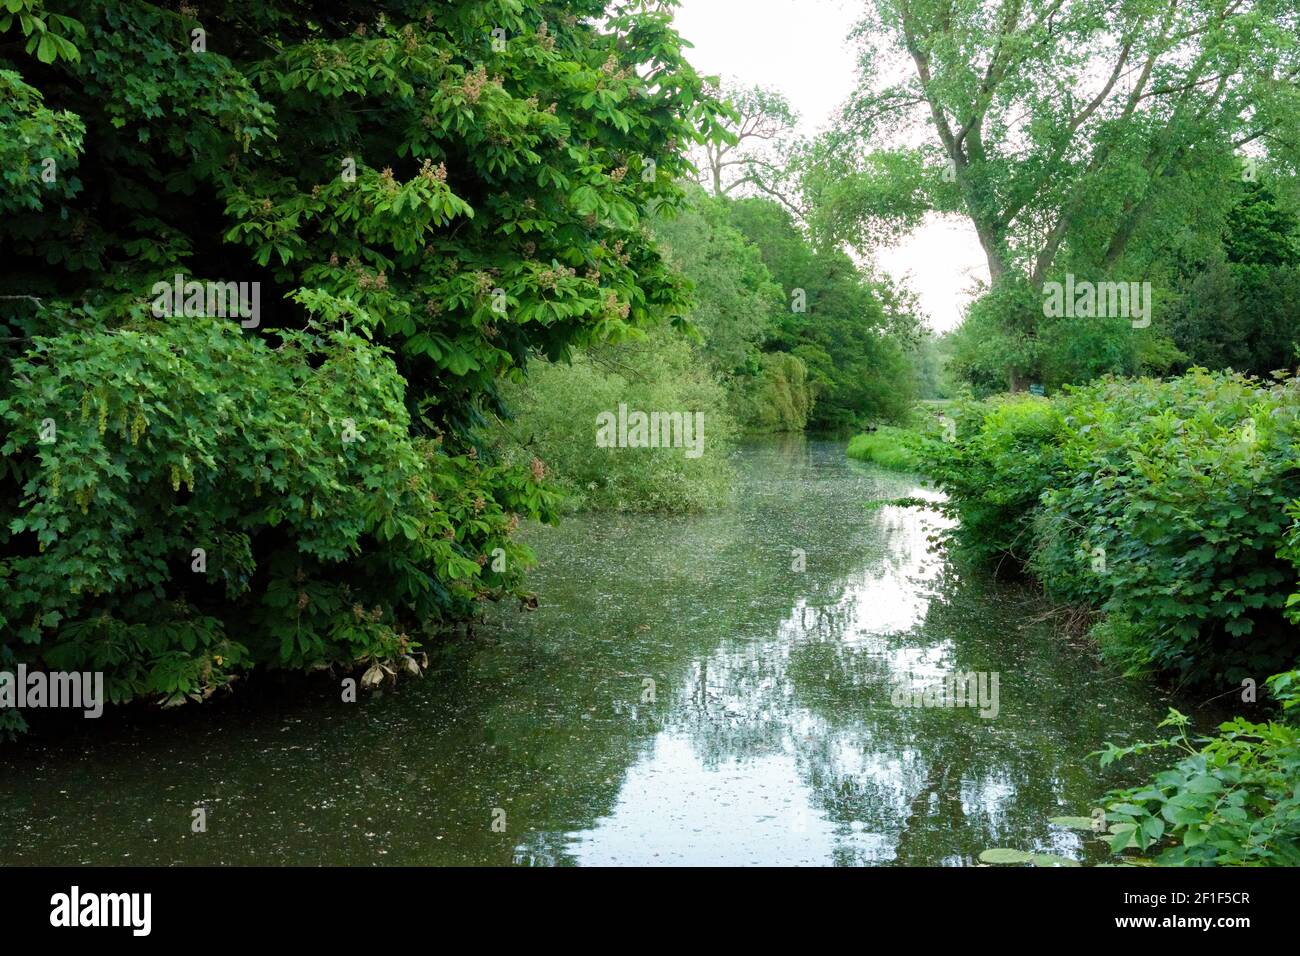 belle vue sur la rivière sauvage avec arbres suspendus Banque D'Images